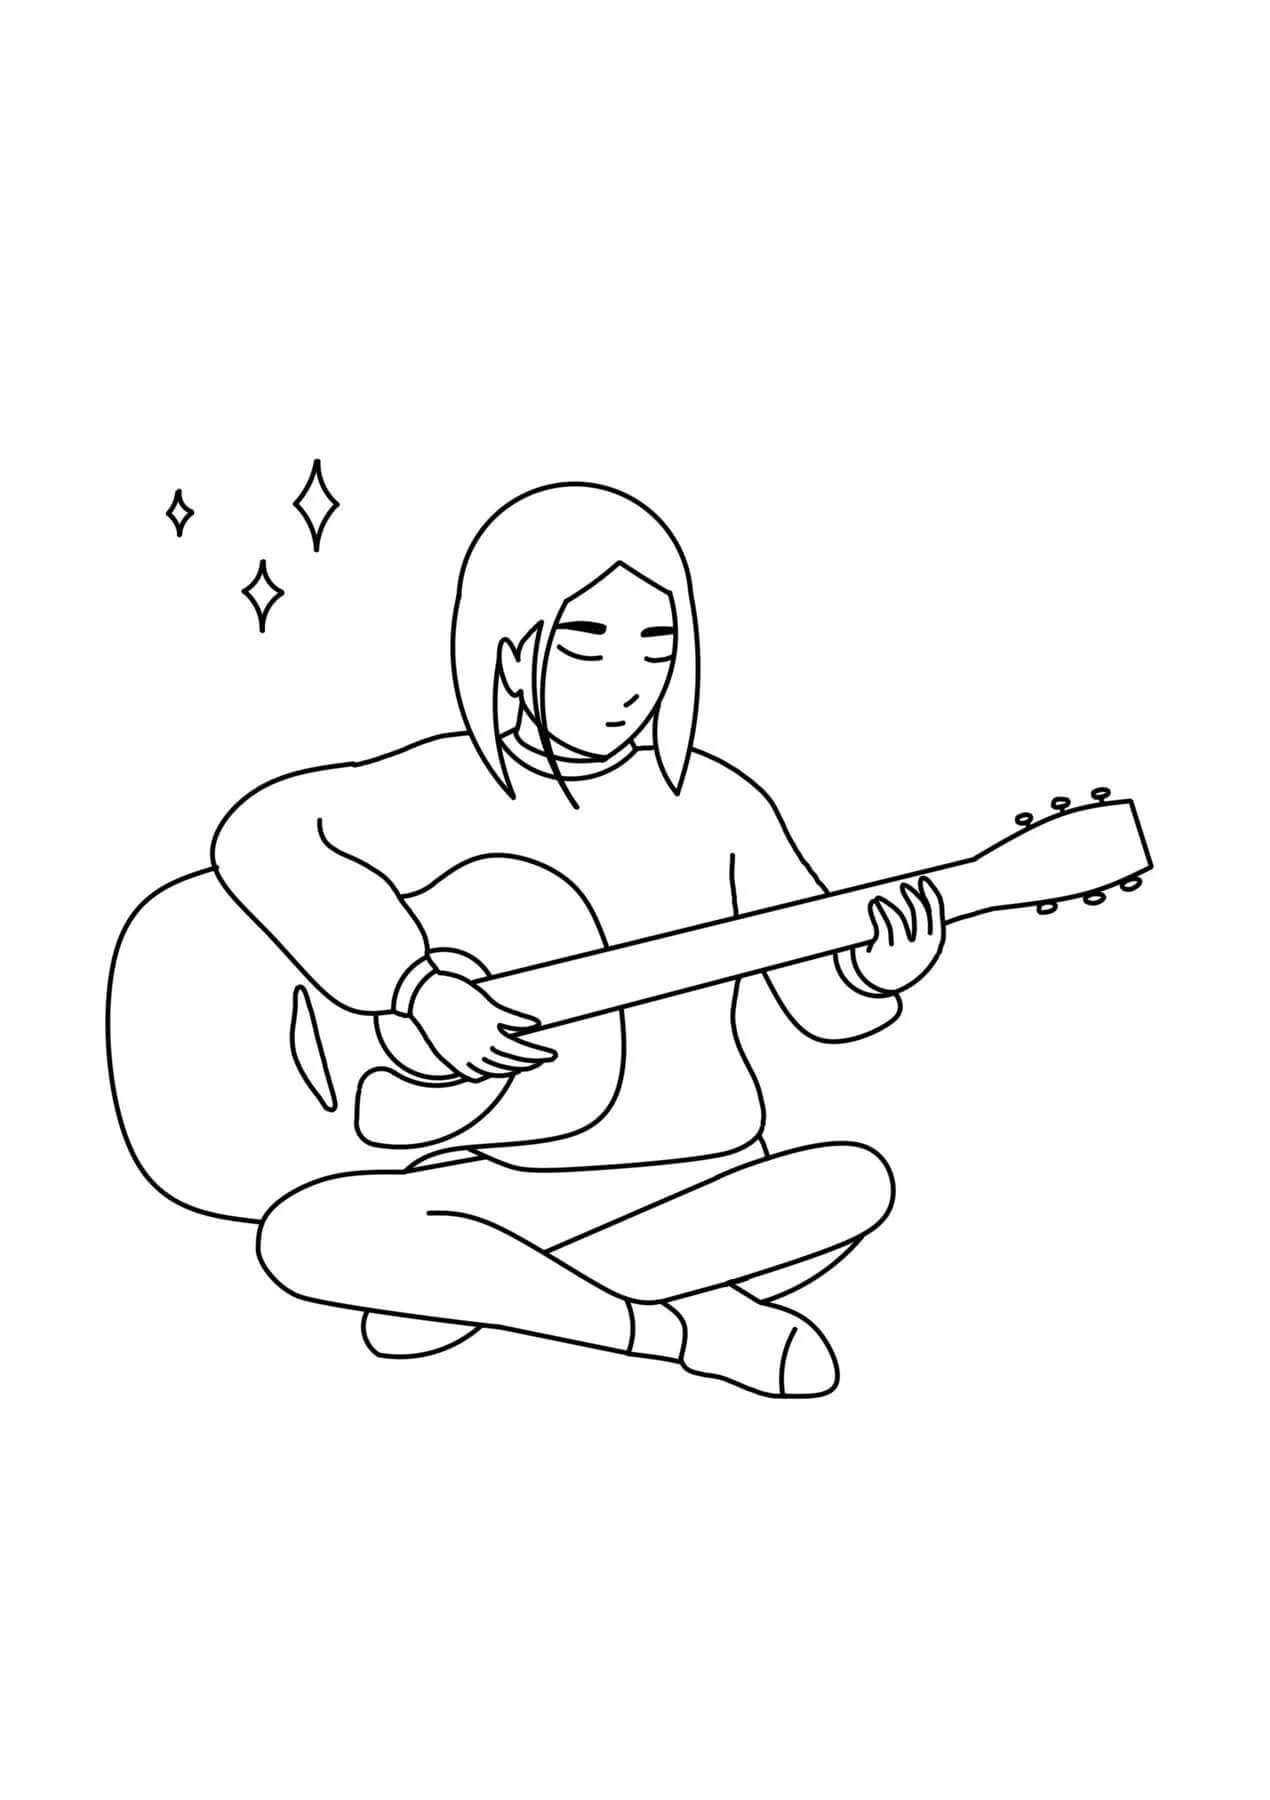 La Fille Joue de la Guitare coloring page